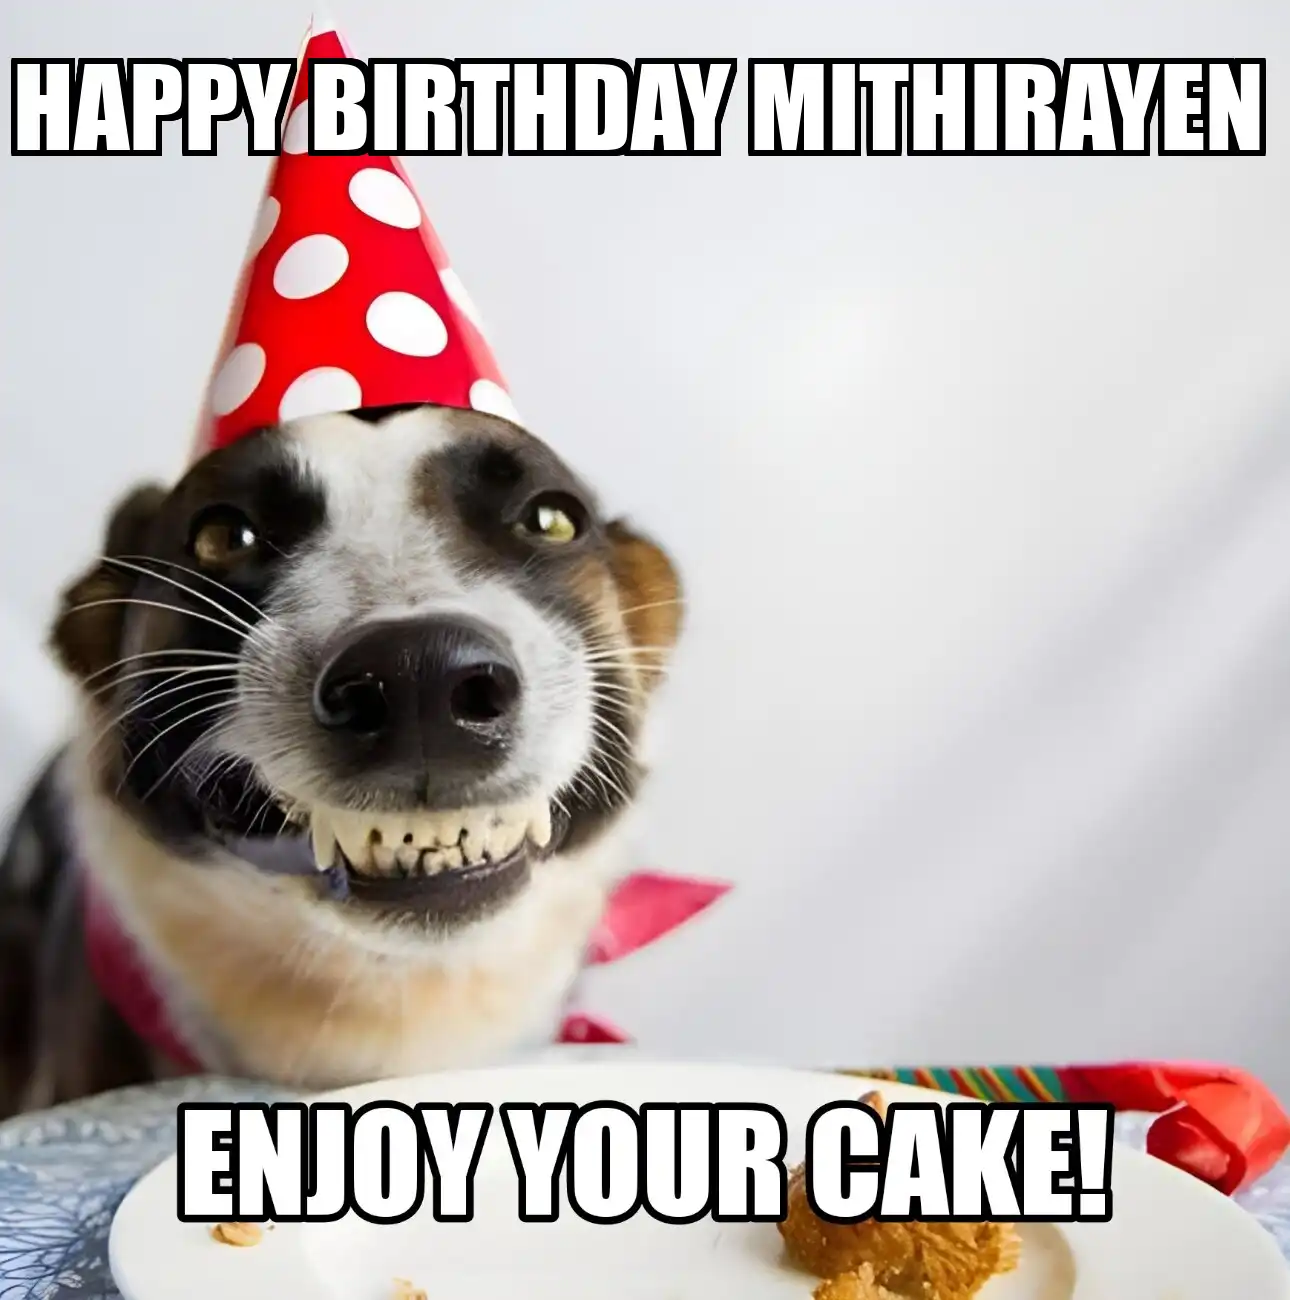 Happy Birthday Mithirayen Enjoy Your Cake Dog Meme